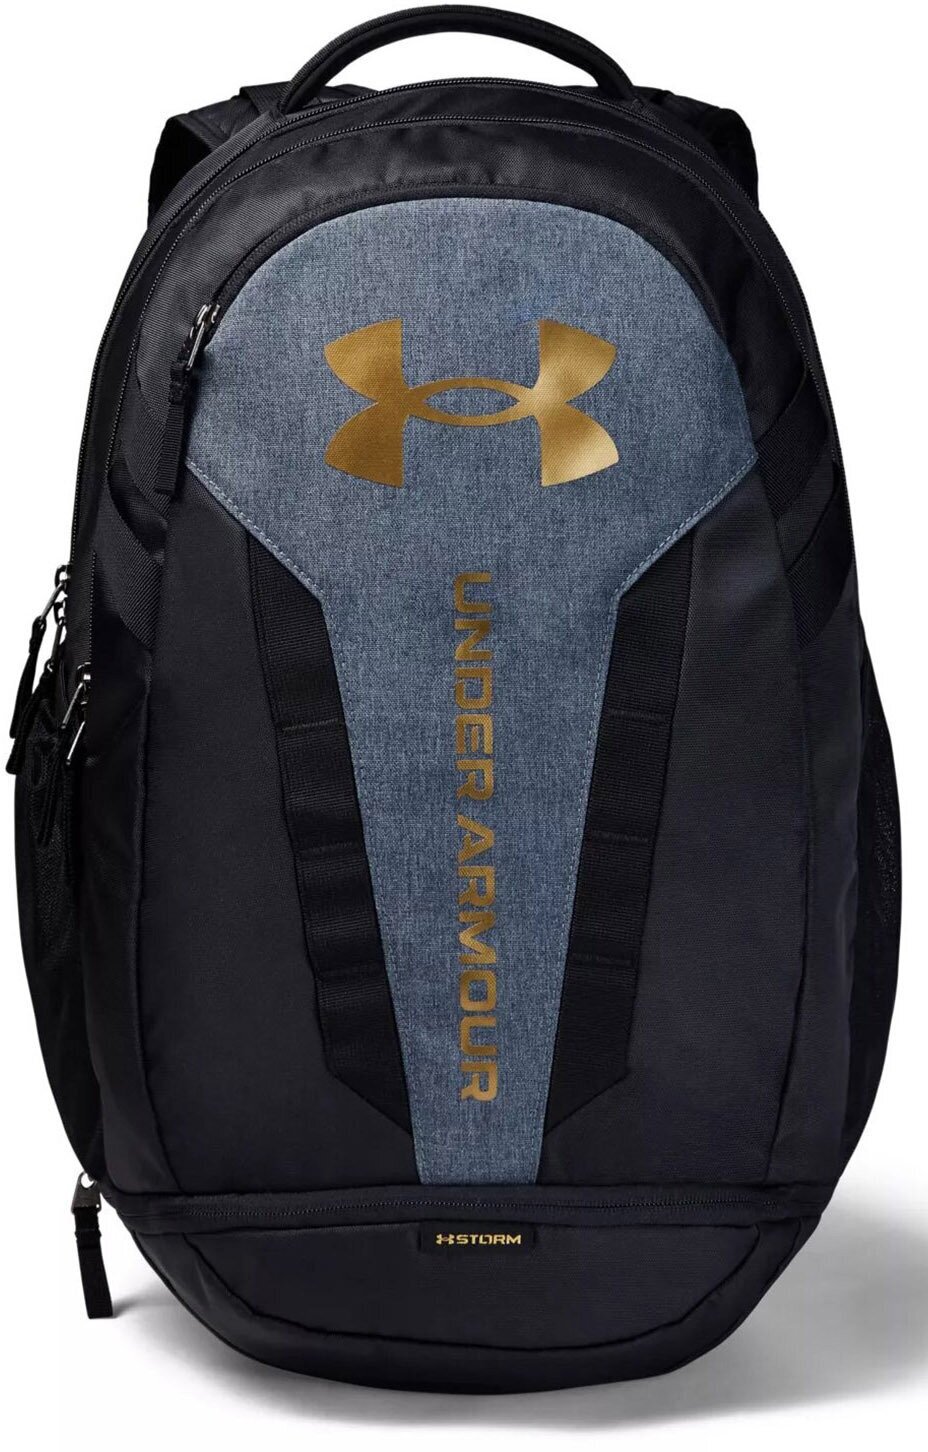 Рюкзак Under Armour Hustle 5.0 Backpack черно-серый